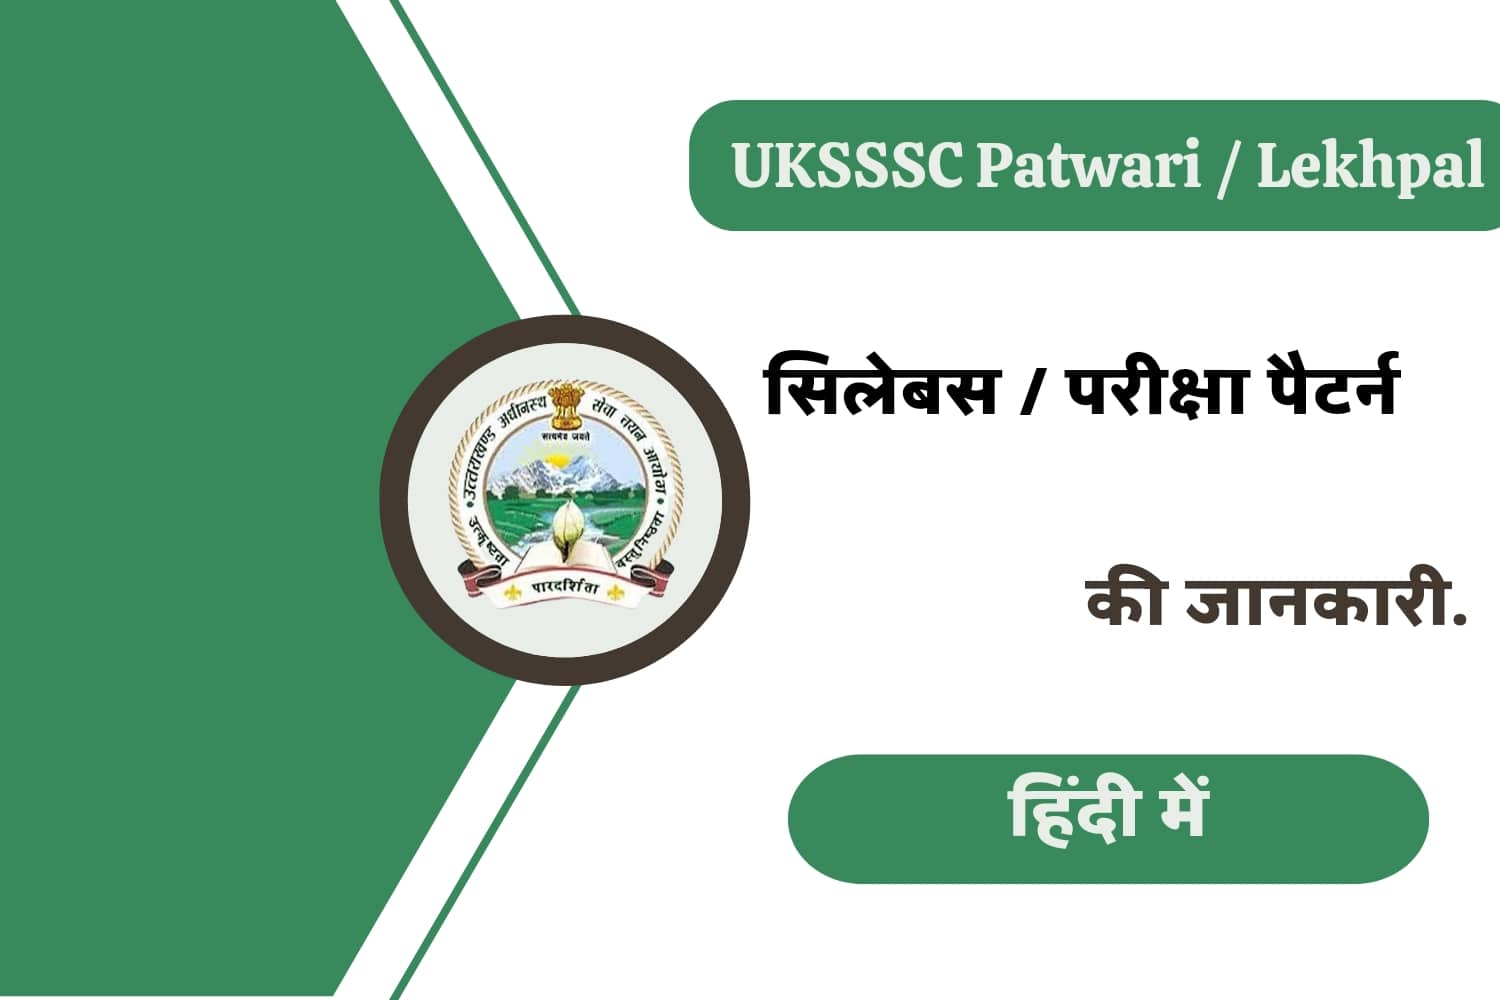 UKPSC Patwari/Lekhpal Syllabus In Hindi | उत्तराखंड पटवारी / लेखपाल सिलेबस हिंदी में